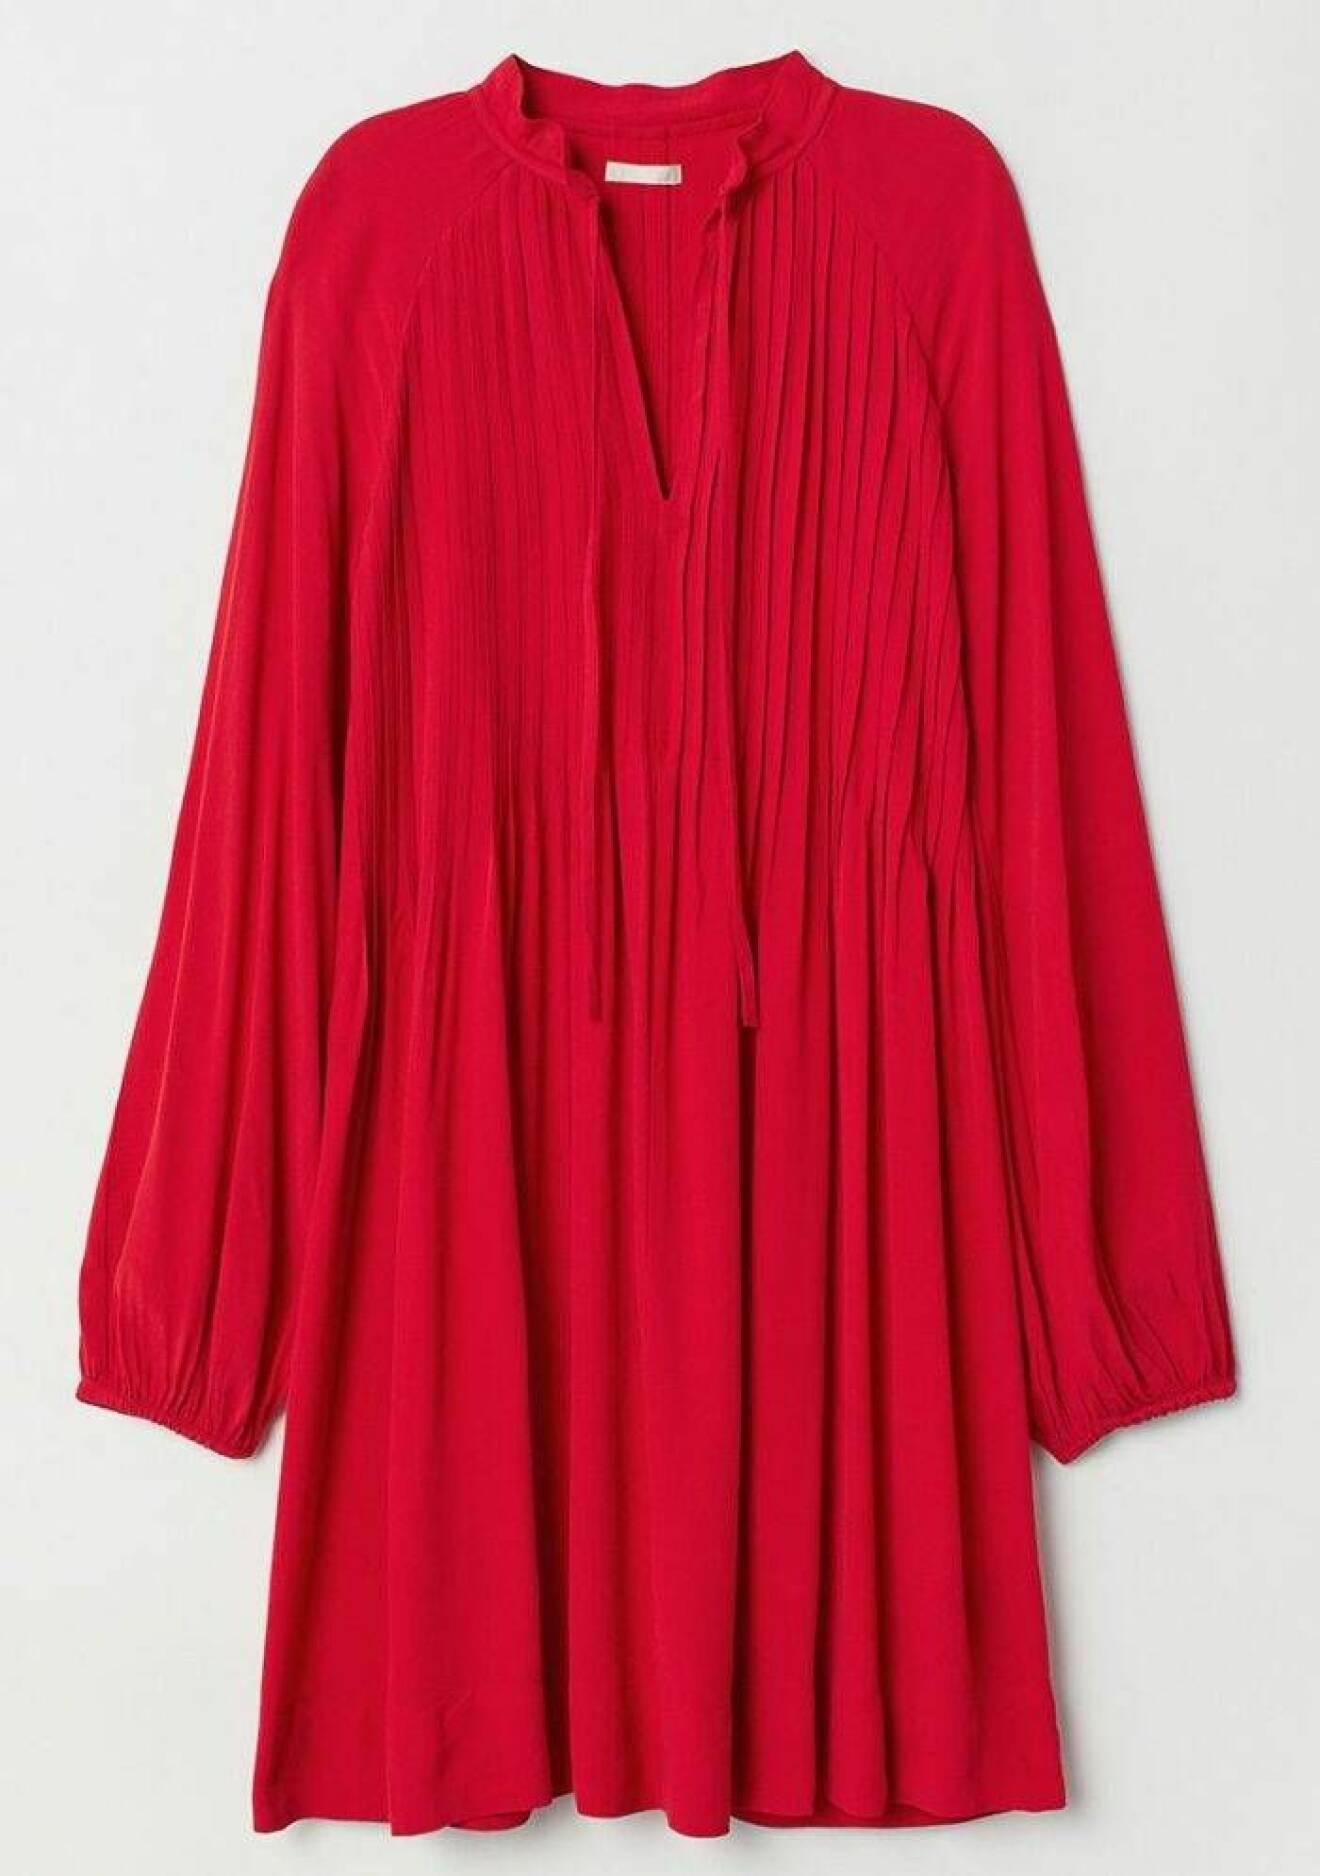 Röd klänning med stråveck från H&M